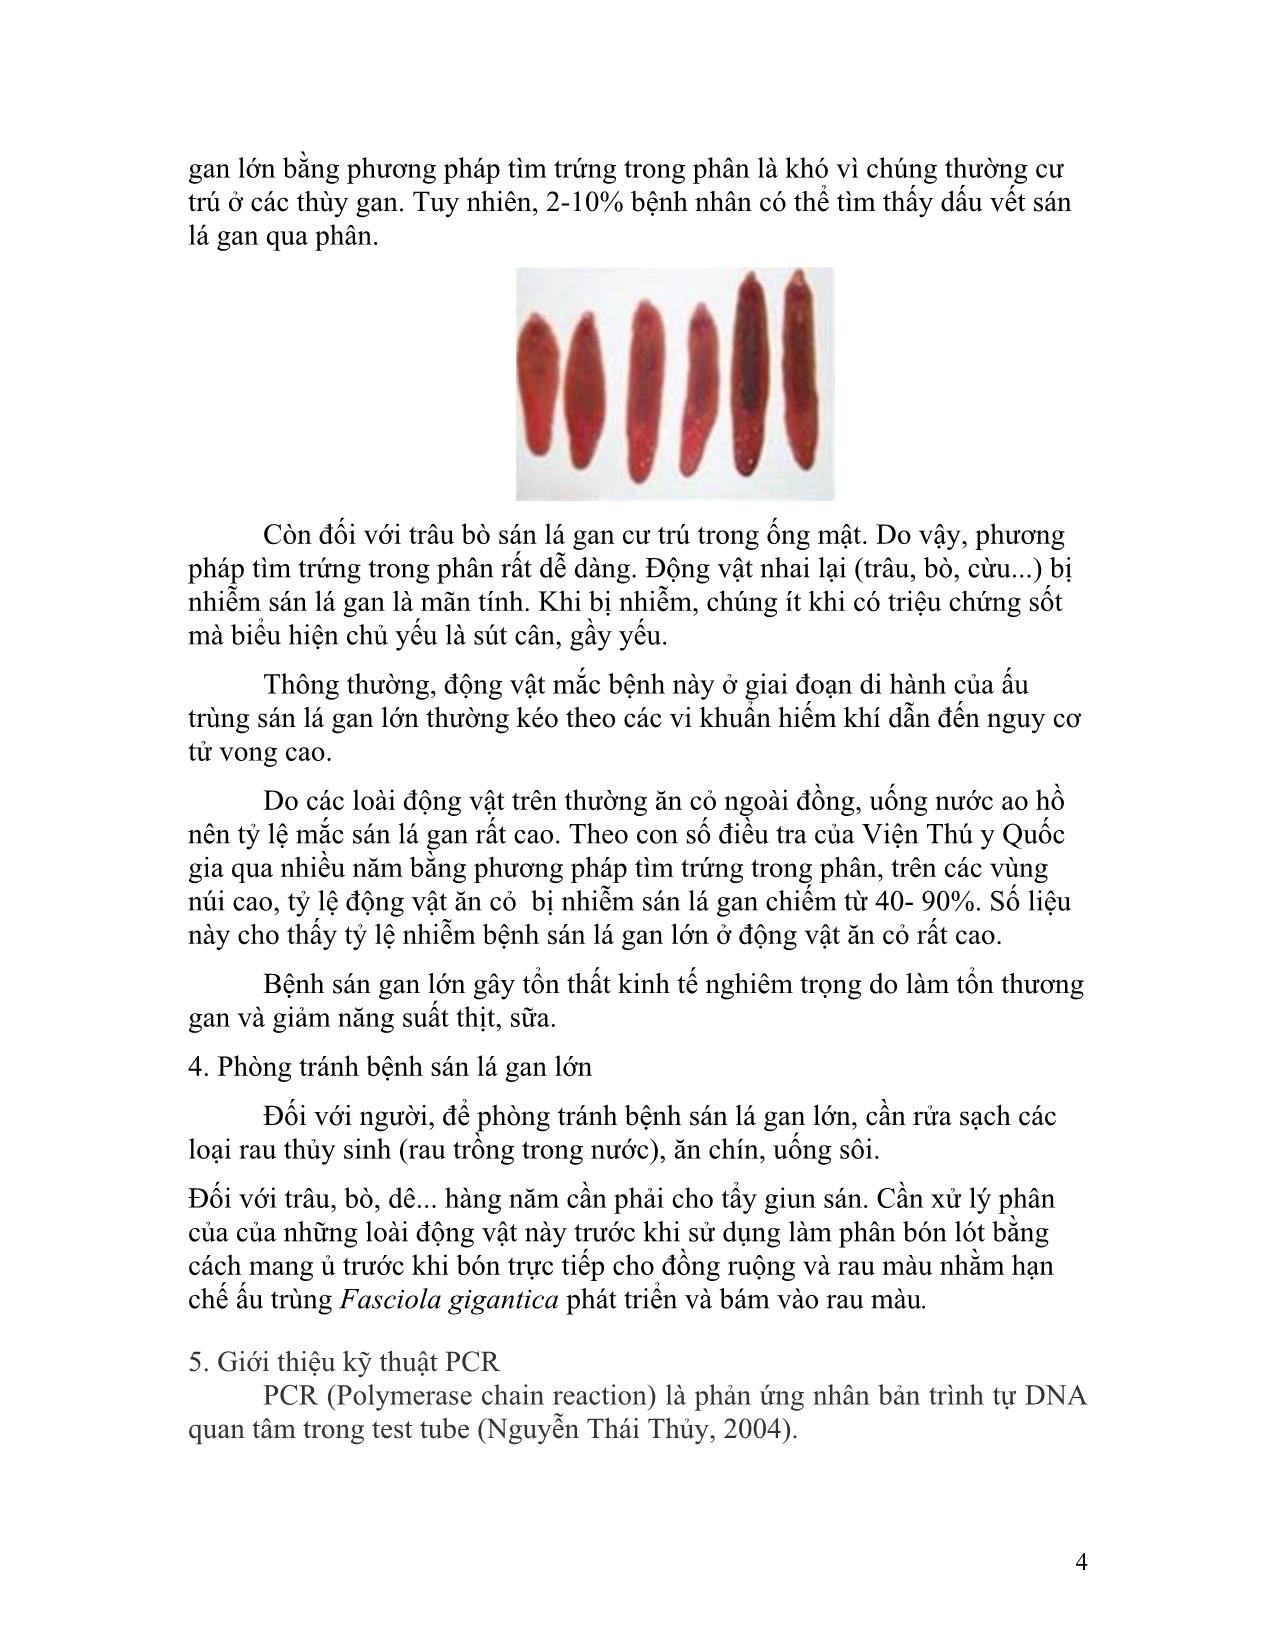 Đề tài Định loại sán lá gan lớn bằng kỹ thuật rapd-Pcr trang 5